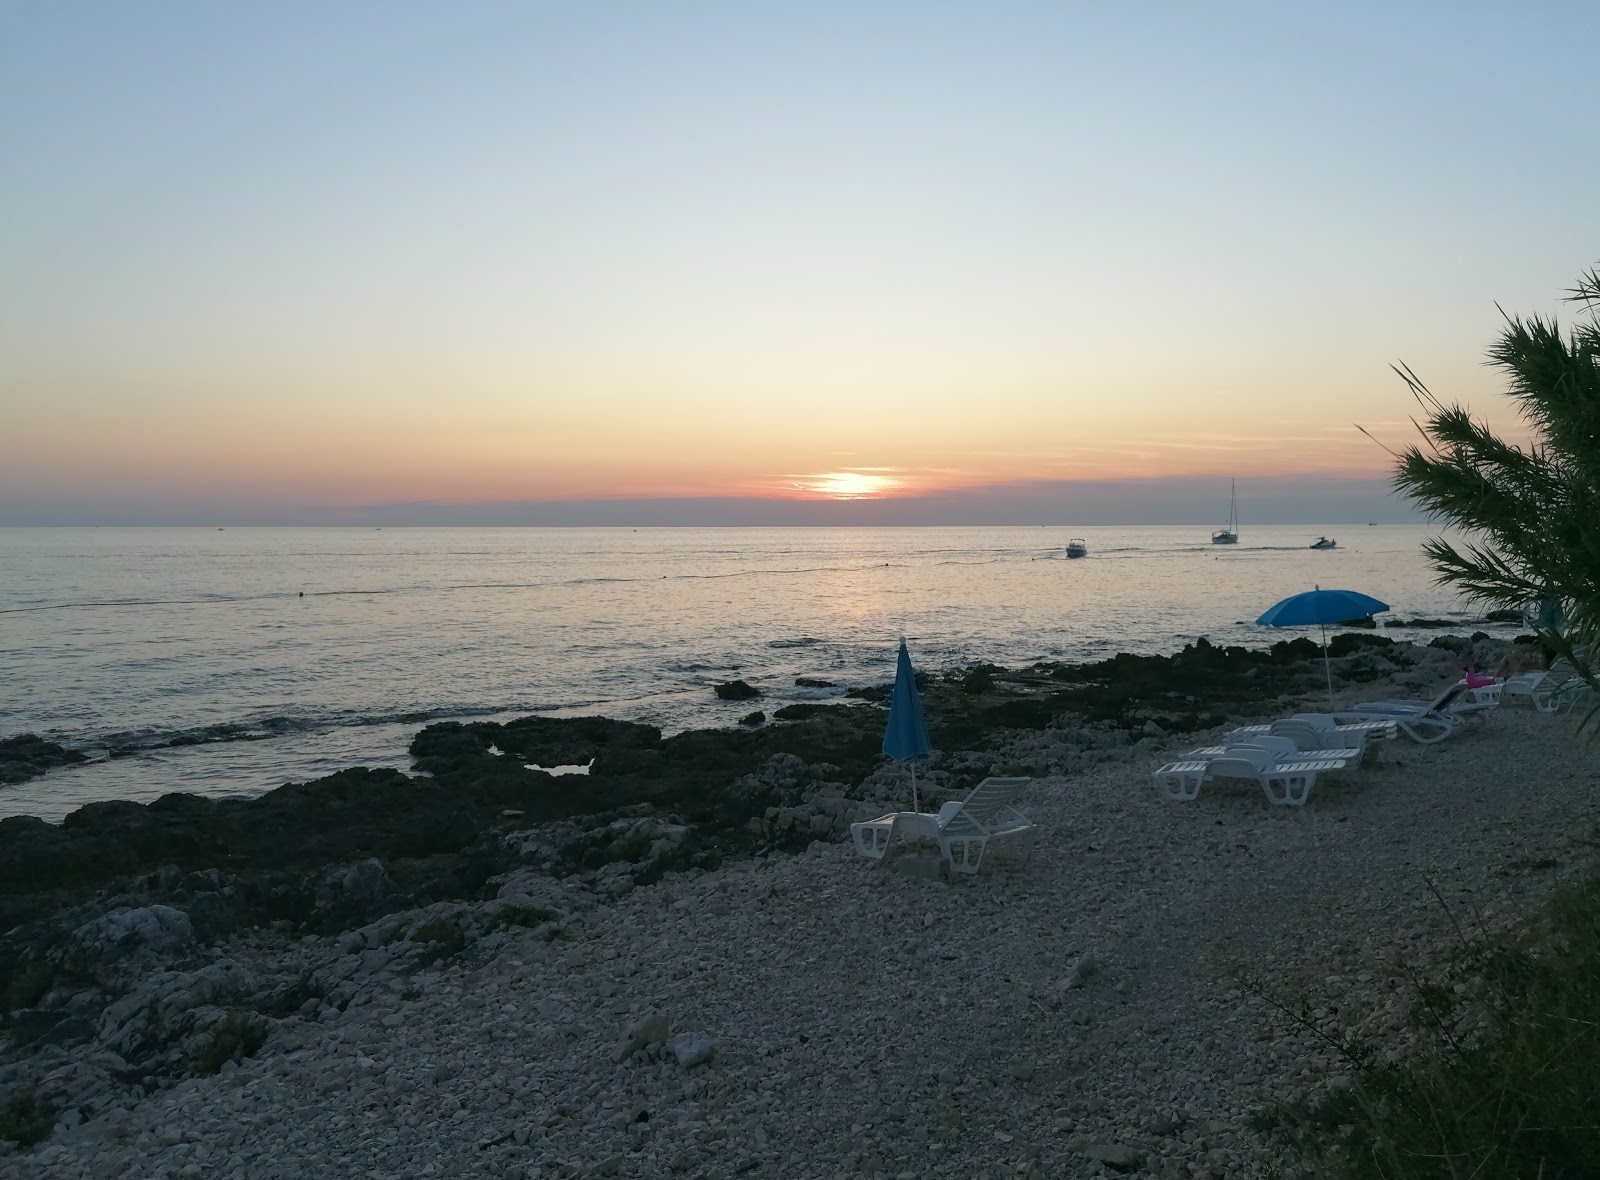 Zdjęcie Punta Kriz beach - popularne miejsce wśród znawców relaksu